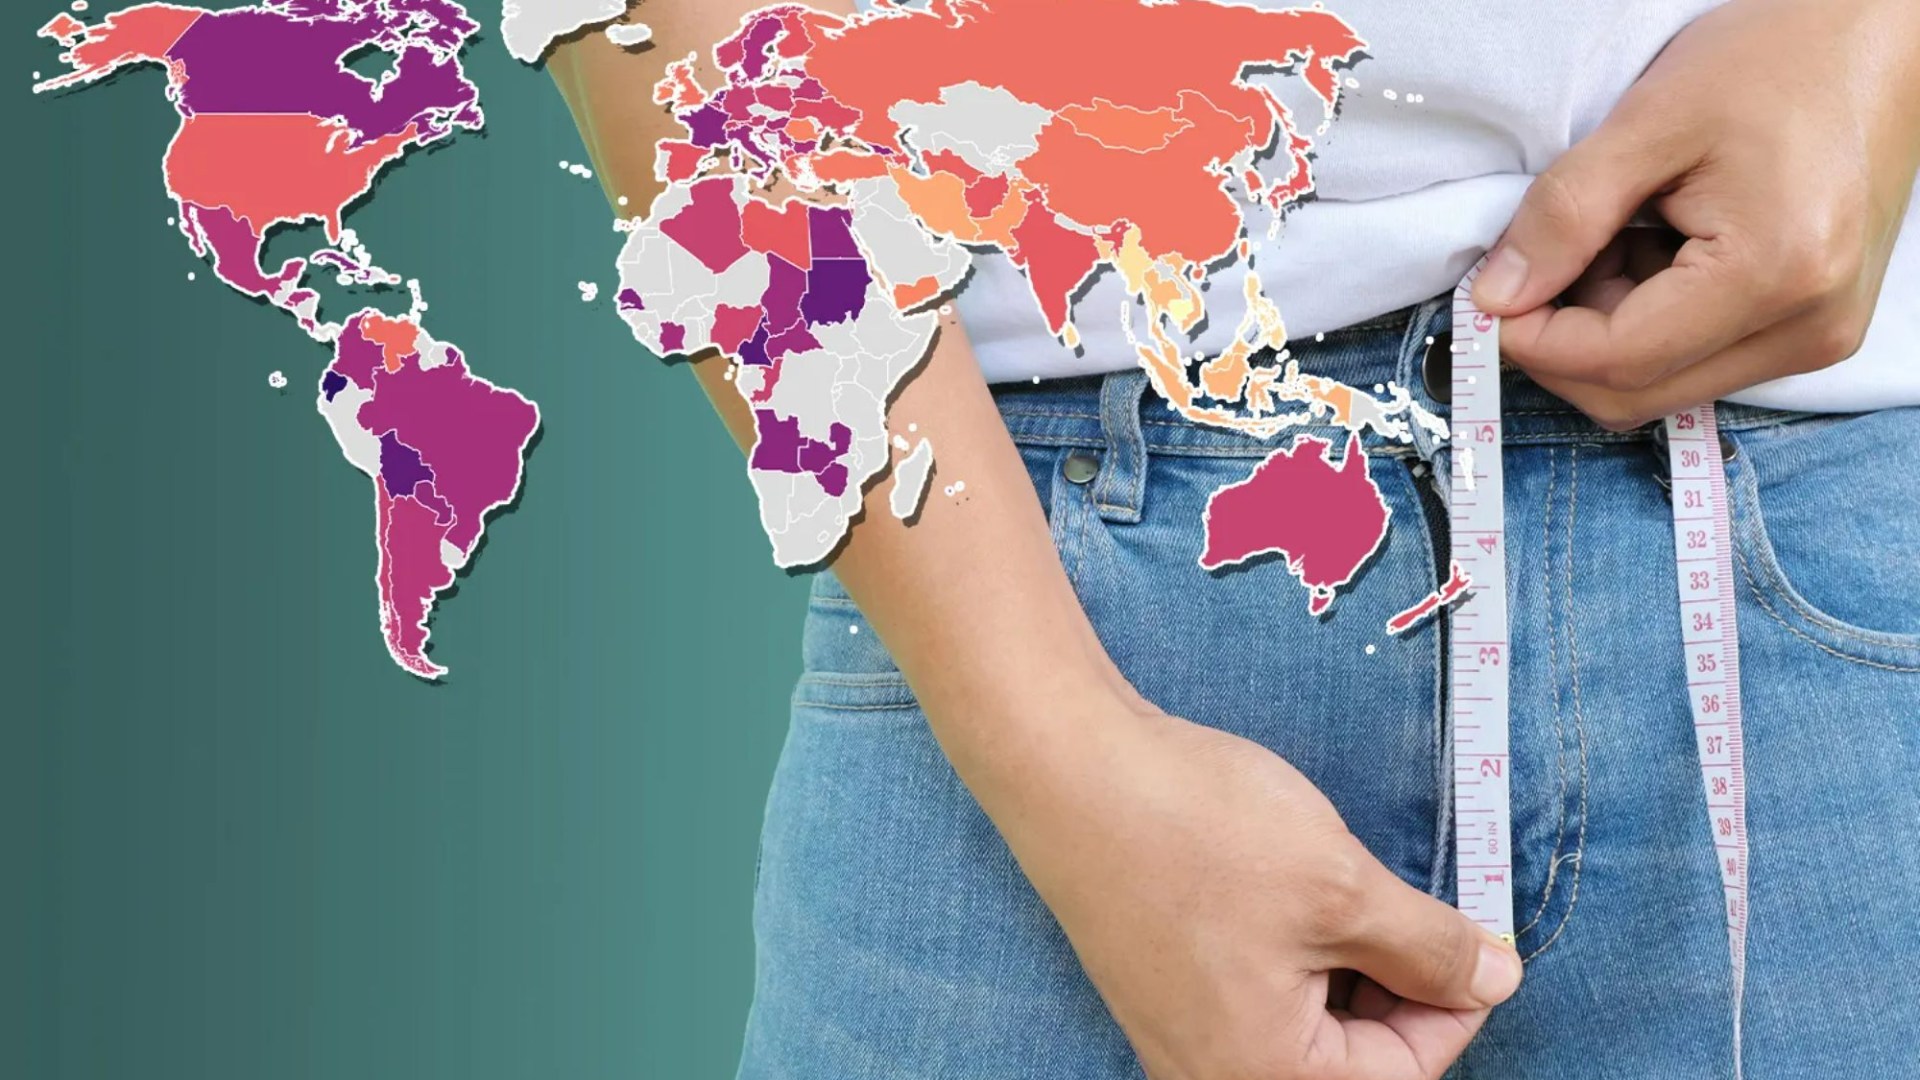 El mapa revela el tamaño promedio del pene en todo el mundo… pero el Reino Unido y los EE. UU. no están ni cerca del major 10